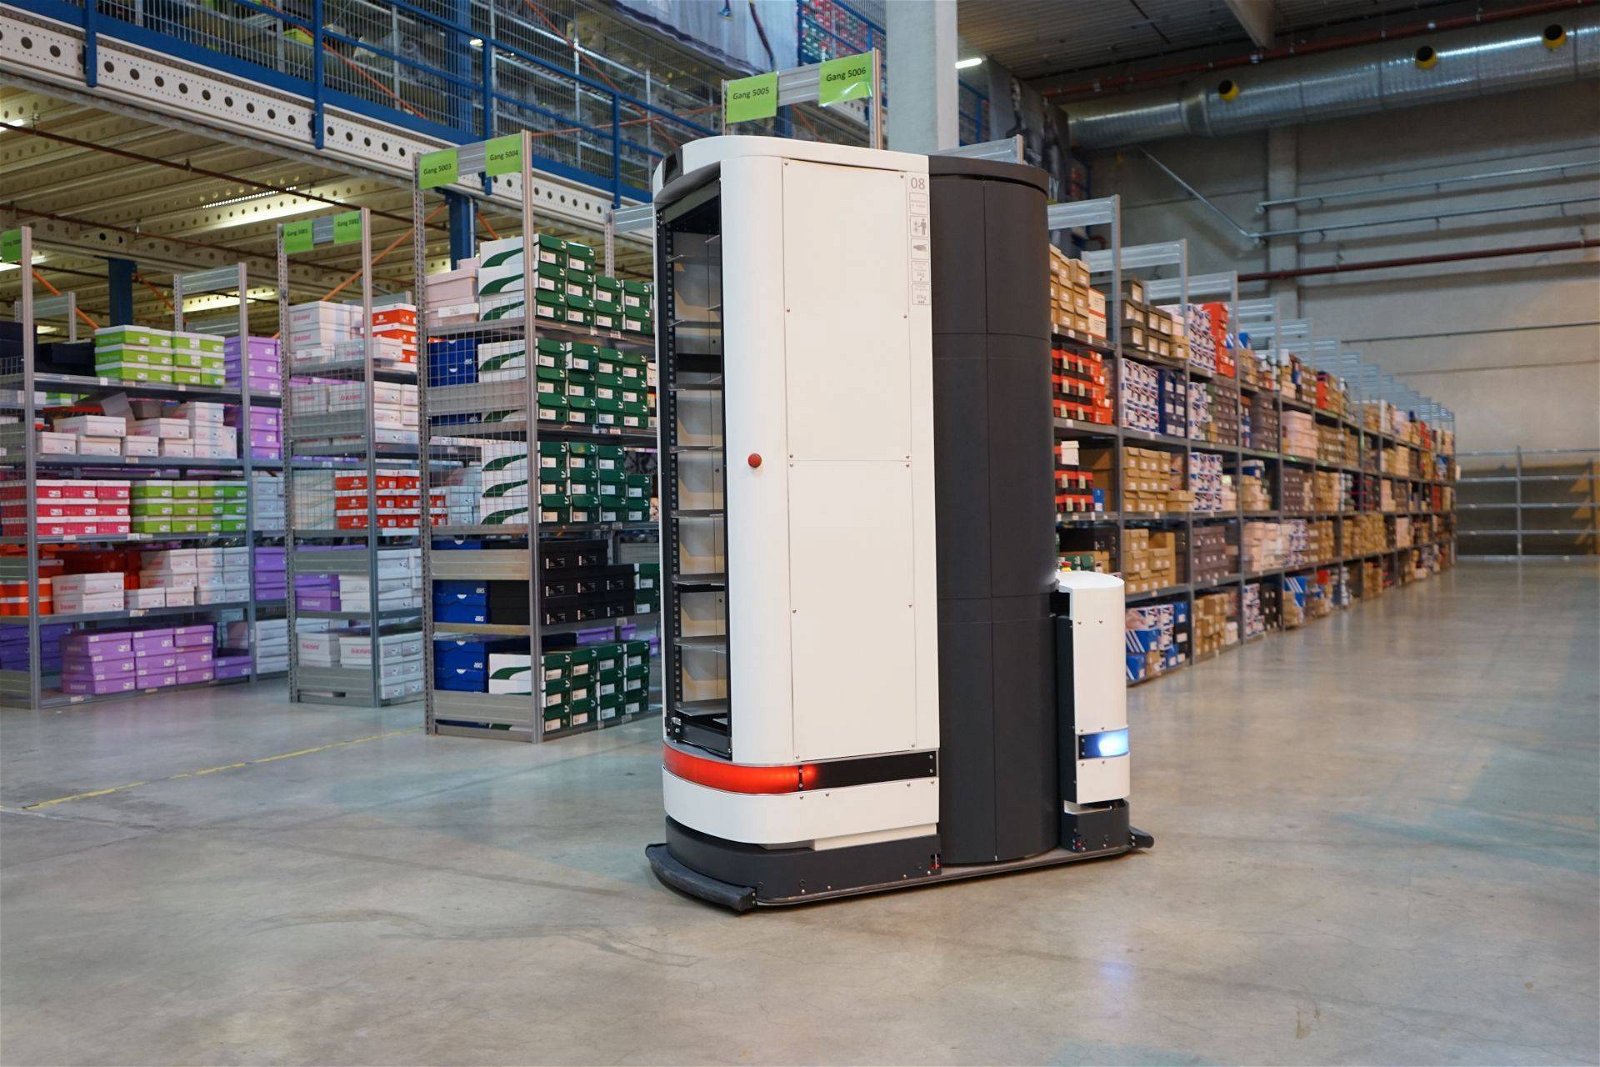 Immagine di Zalando, i robot nel centro logistico per salvare la schiena dei dipendenti